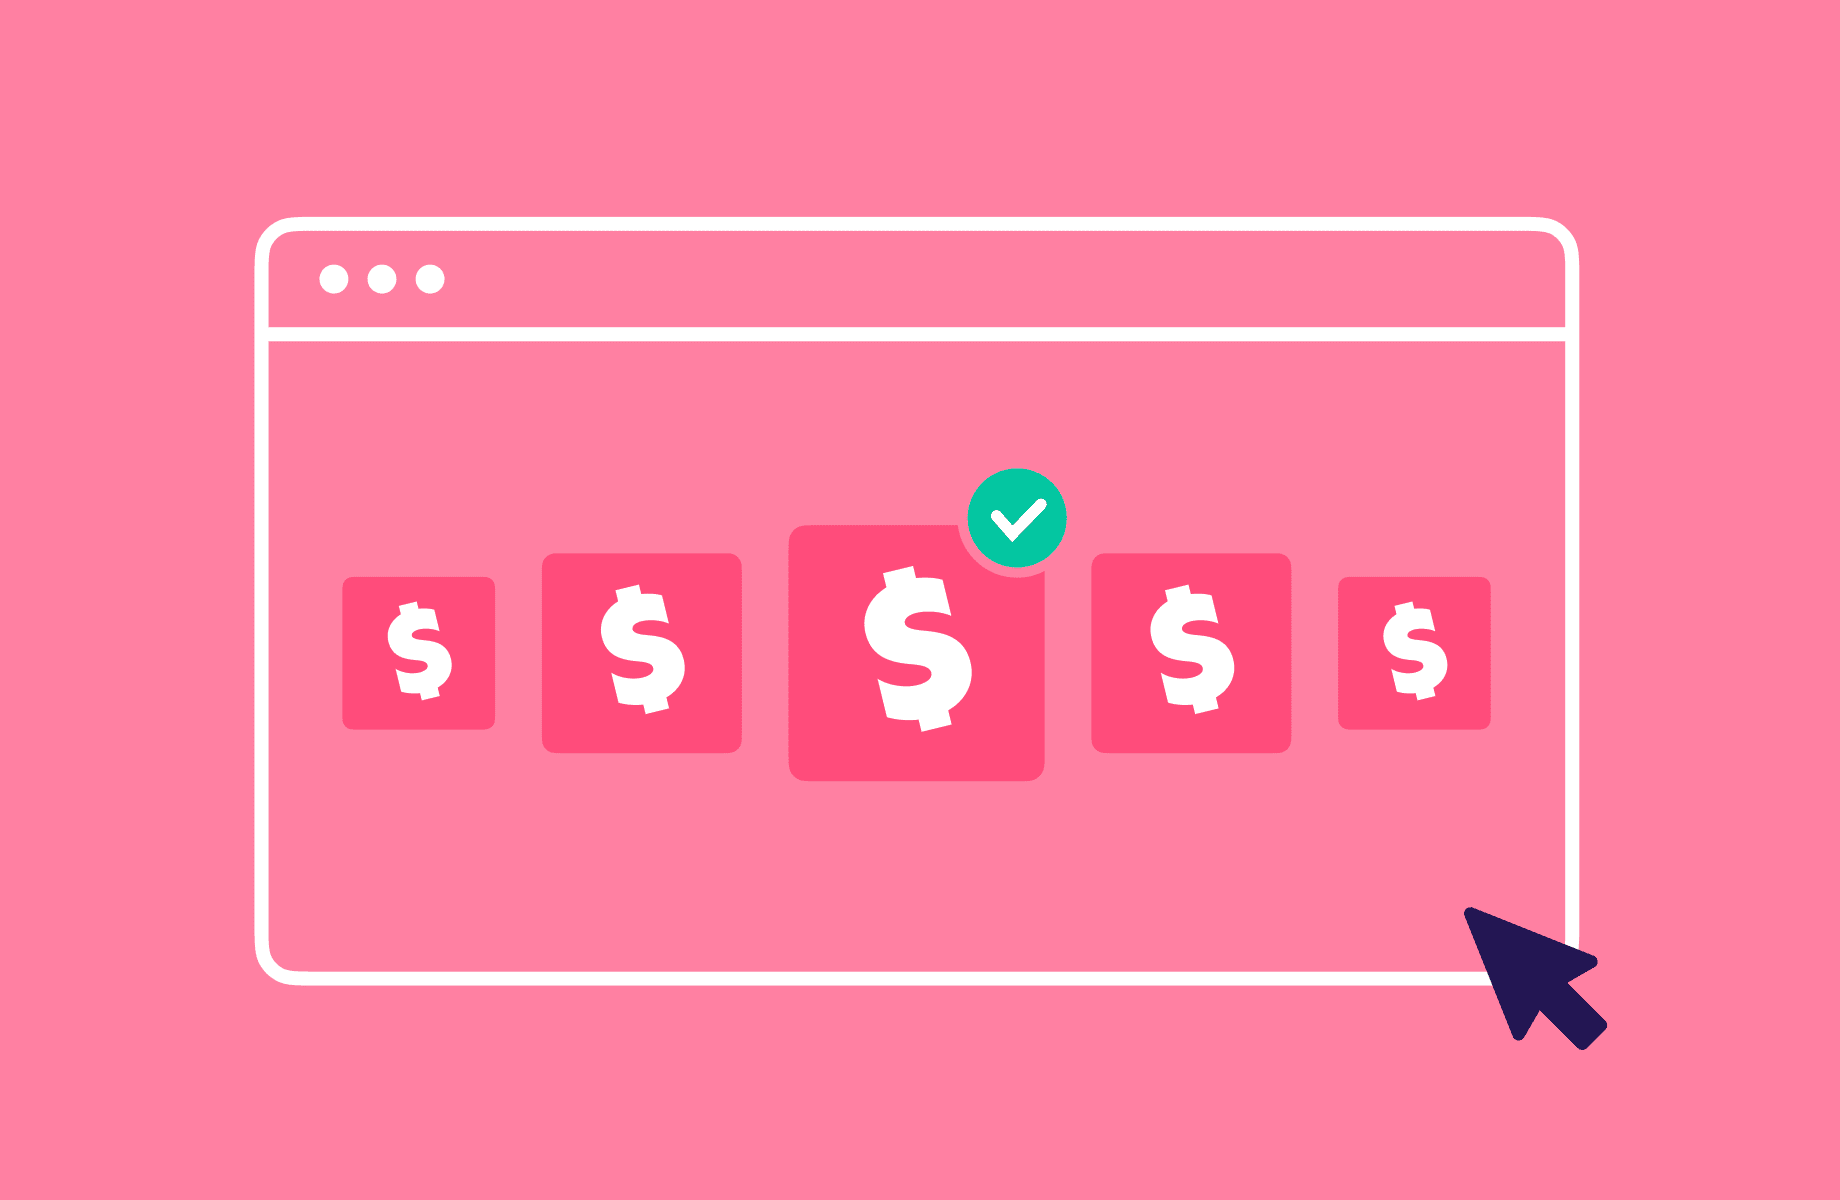 Conheça os 34 melhores aplicativos para ganhar dinheiro